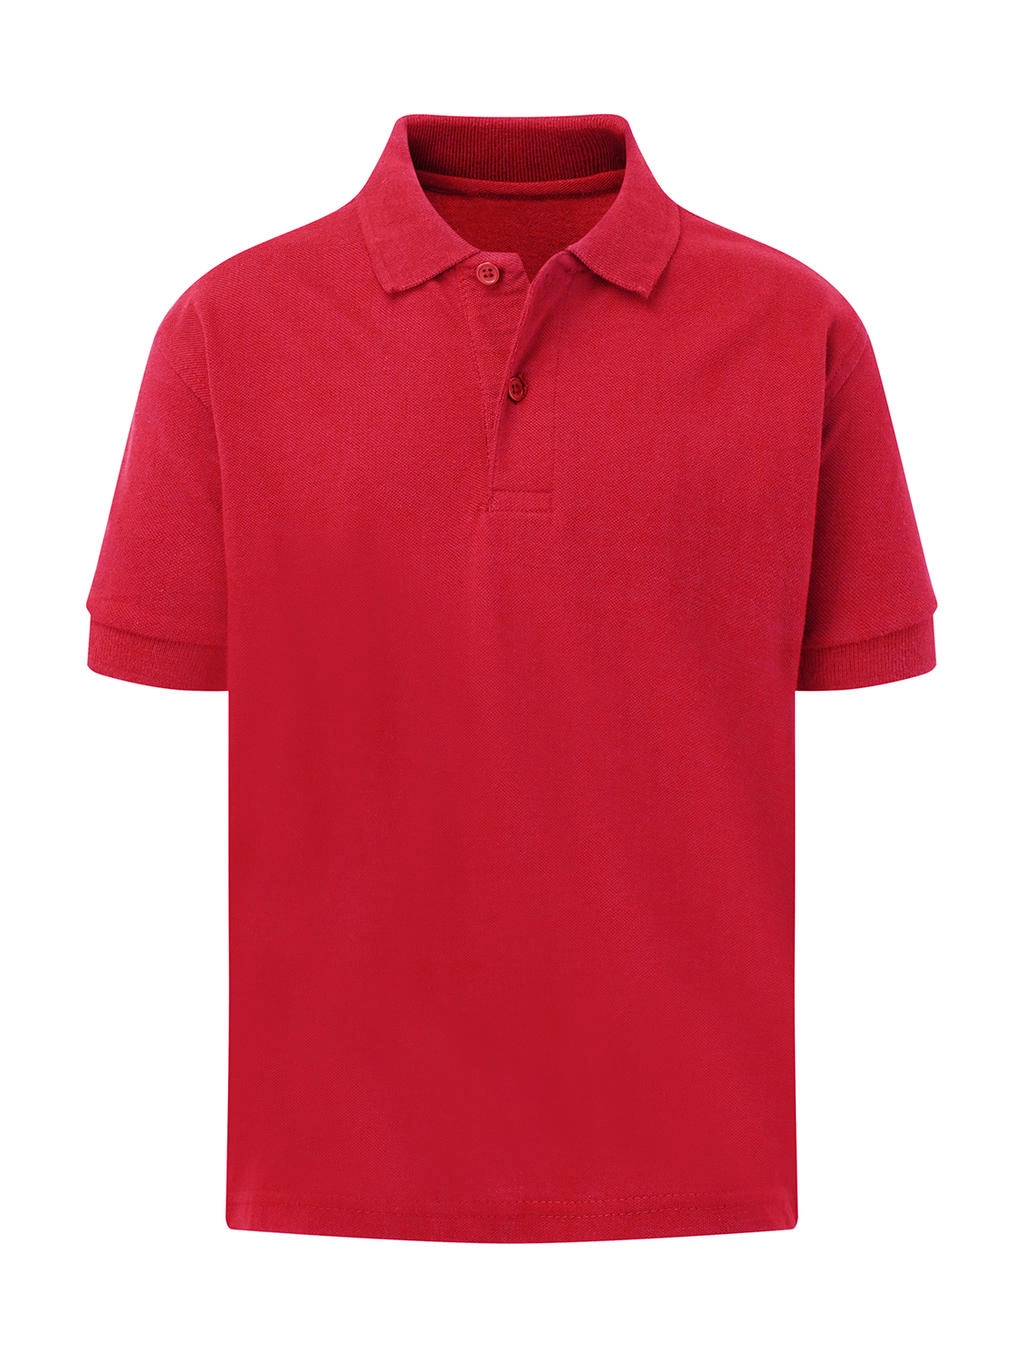 Cotton Polo Kids zum Besticken und Bedrucken in der Farbe Red mit Ihren Logo, Schriftzug oder Motiv.